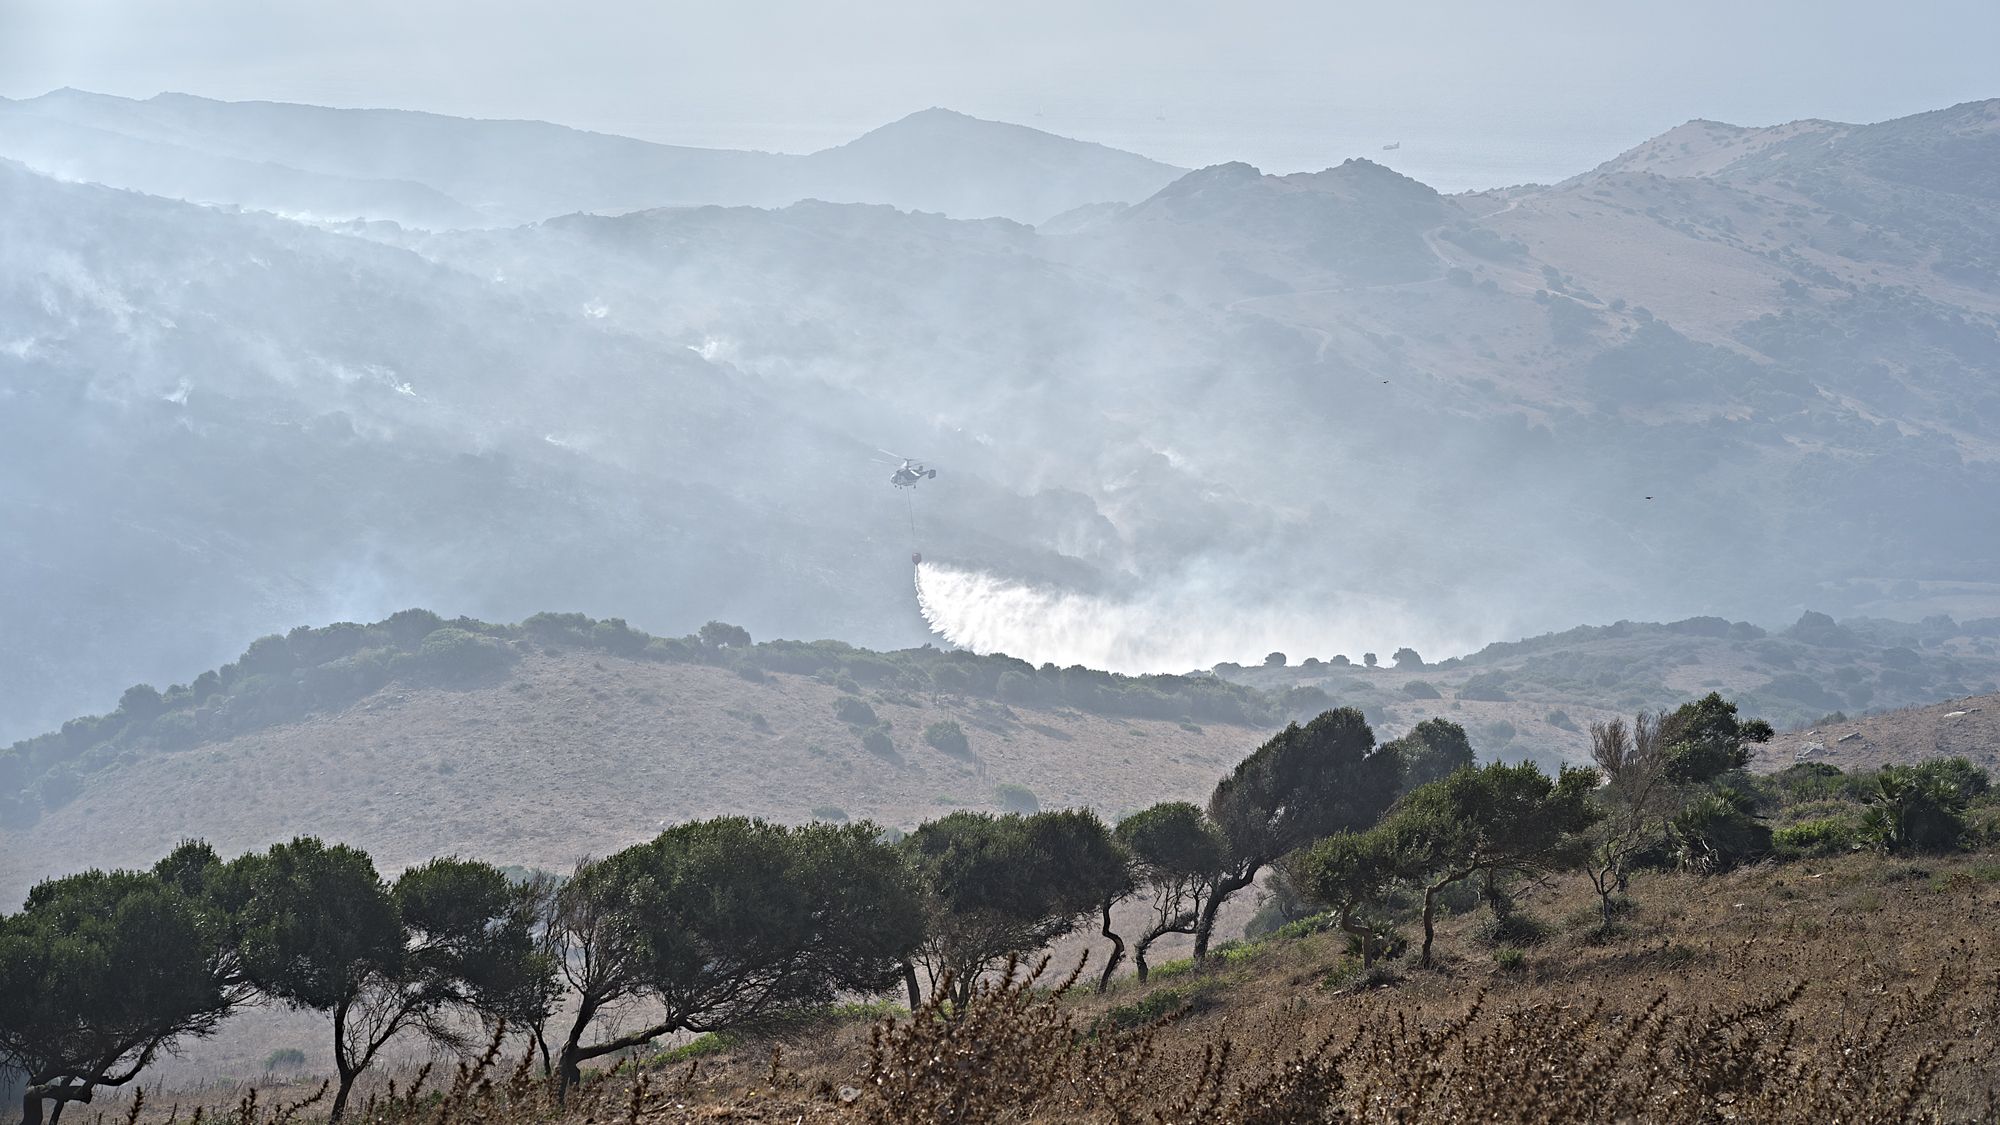 85 de los 97 desalojados en el incendio de Tarifa ya pueden volver a sus casas. Entornos afectados junto a árboles lejos del fuego aún.